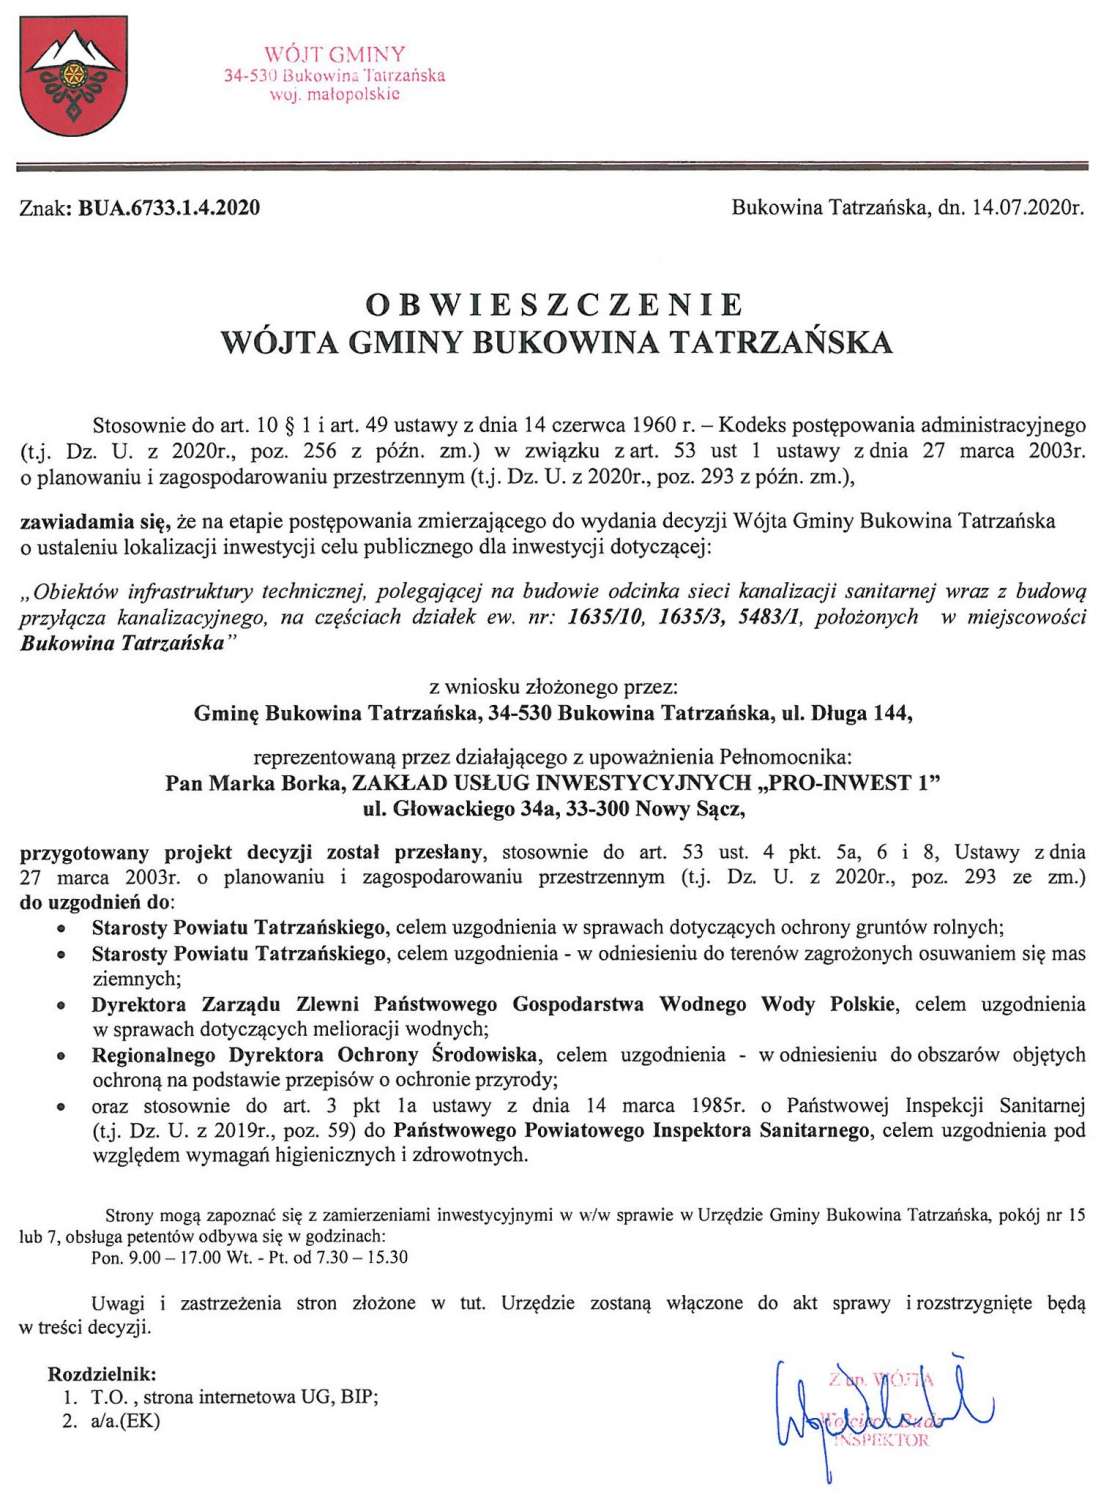 Obwieszczenie Wójta Gminy Bukowina Tatrzańska BUA 6733.1.4.2020